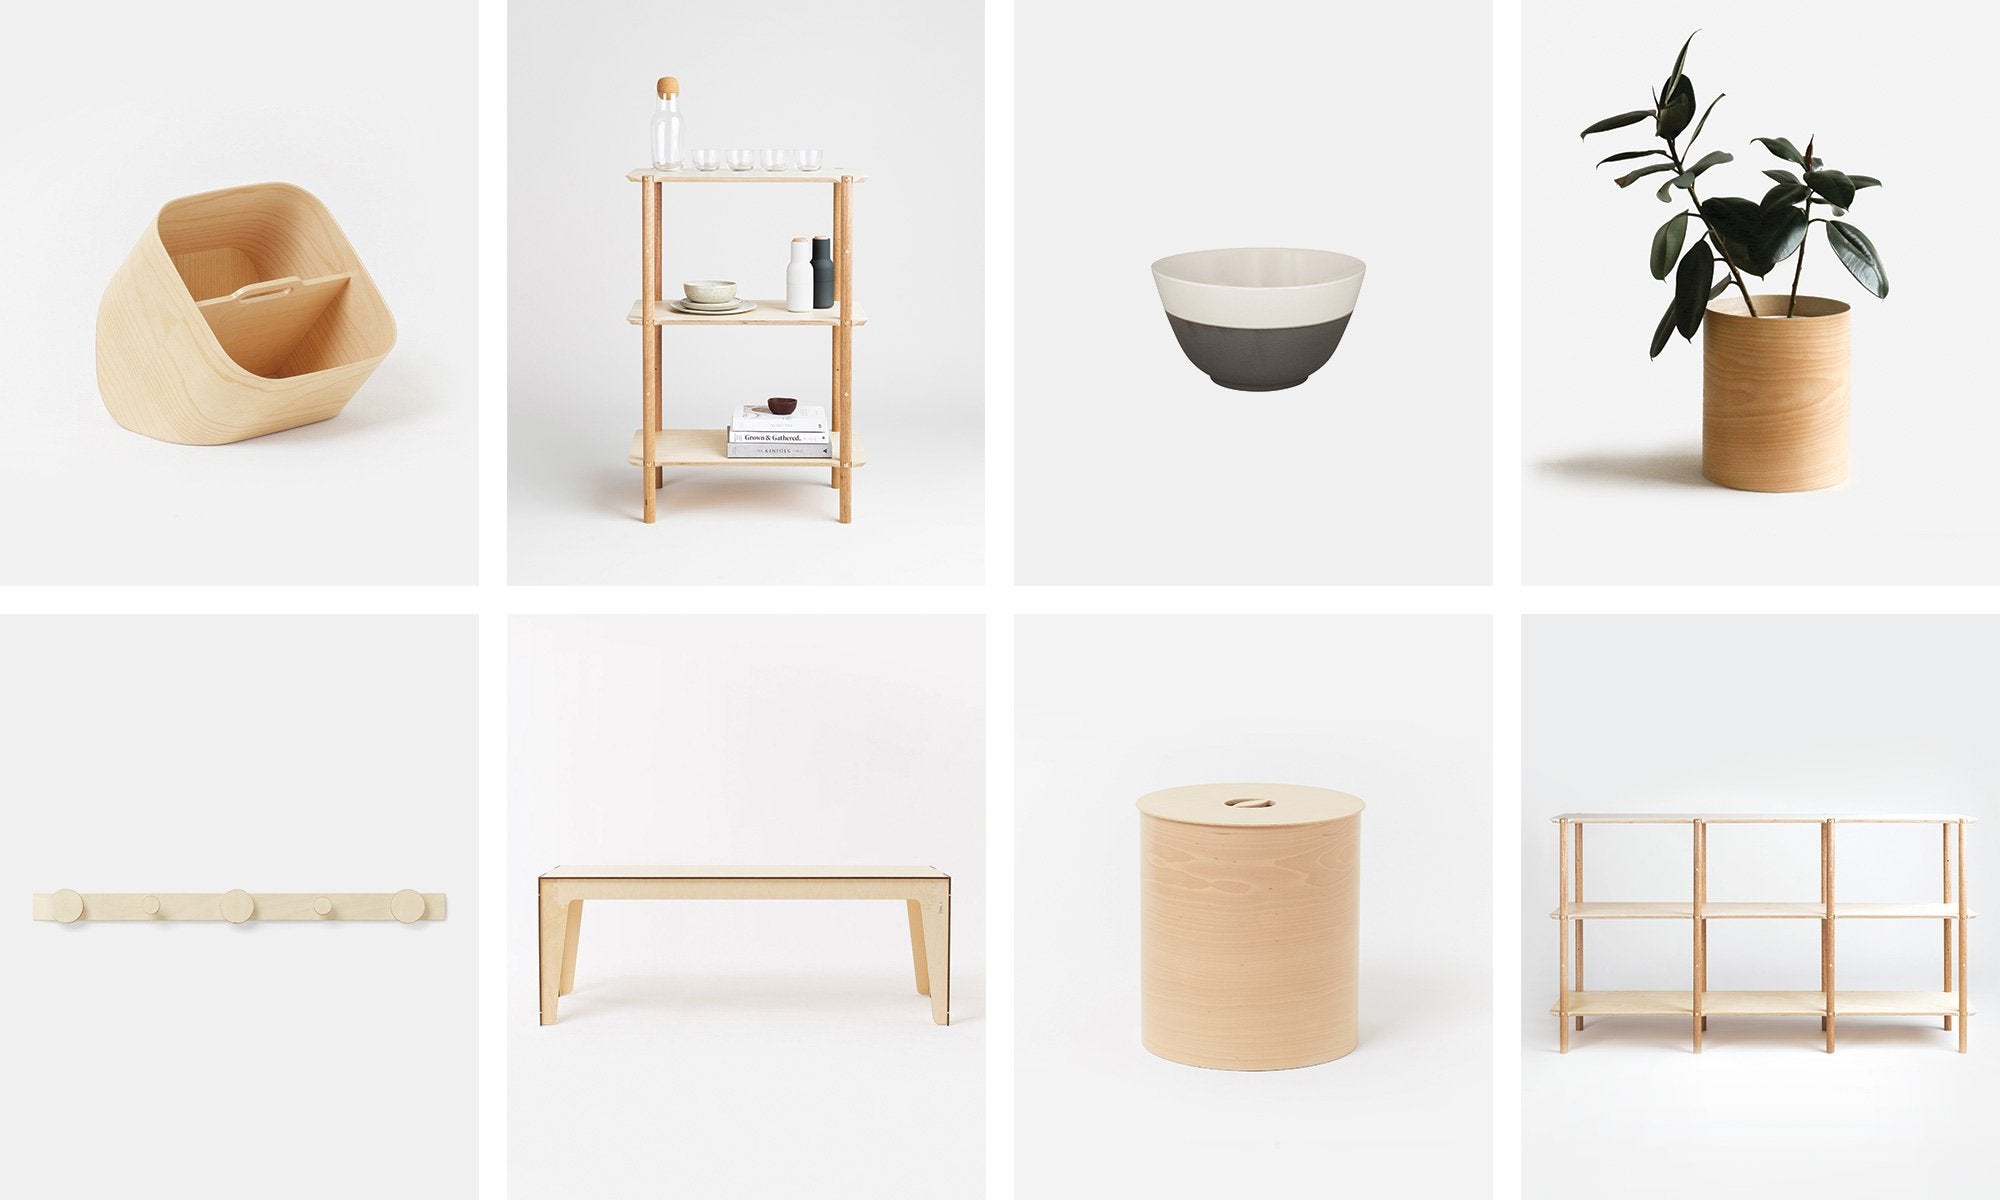 Plyroom minimalist and modern furniture